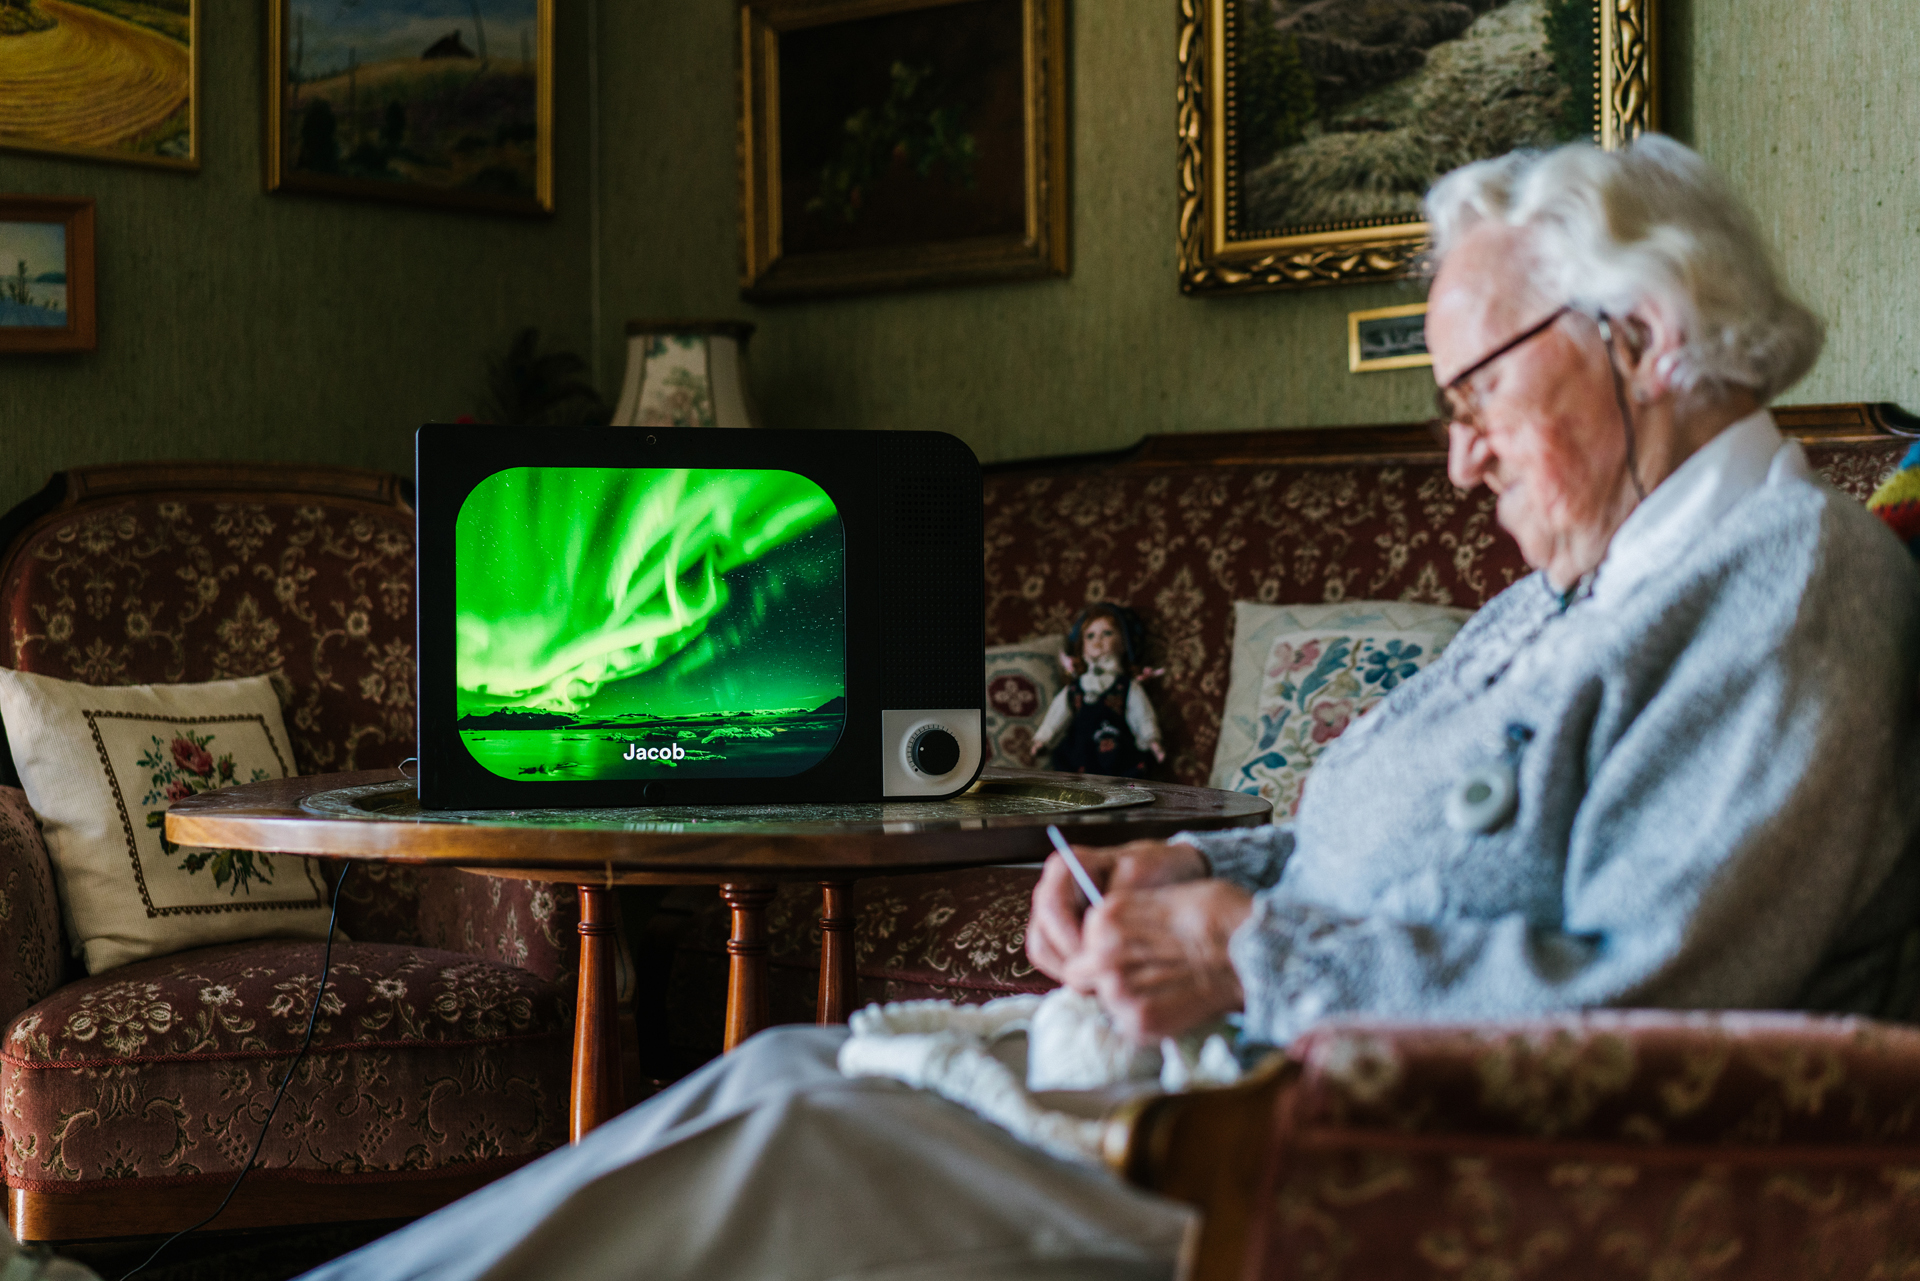 Het simpele scherm KOMP is met één knop te bedienen - ideaal voor ouderen. Foto: No Isolation.